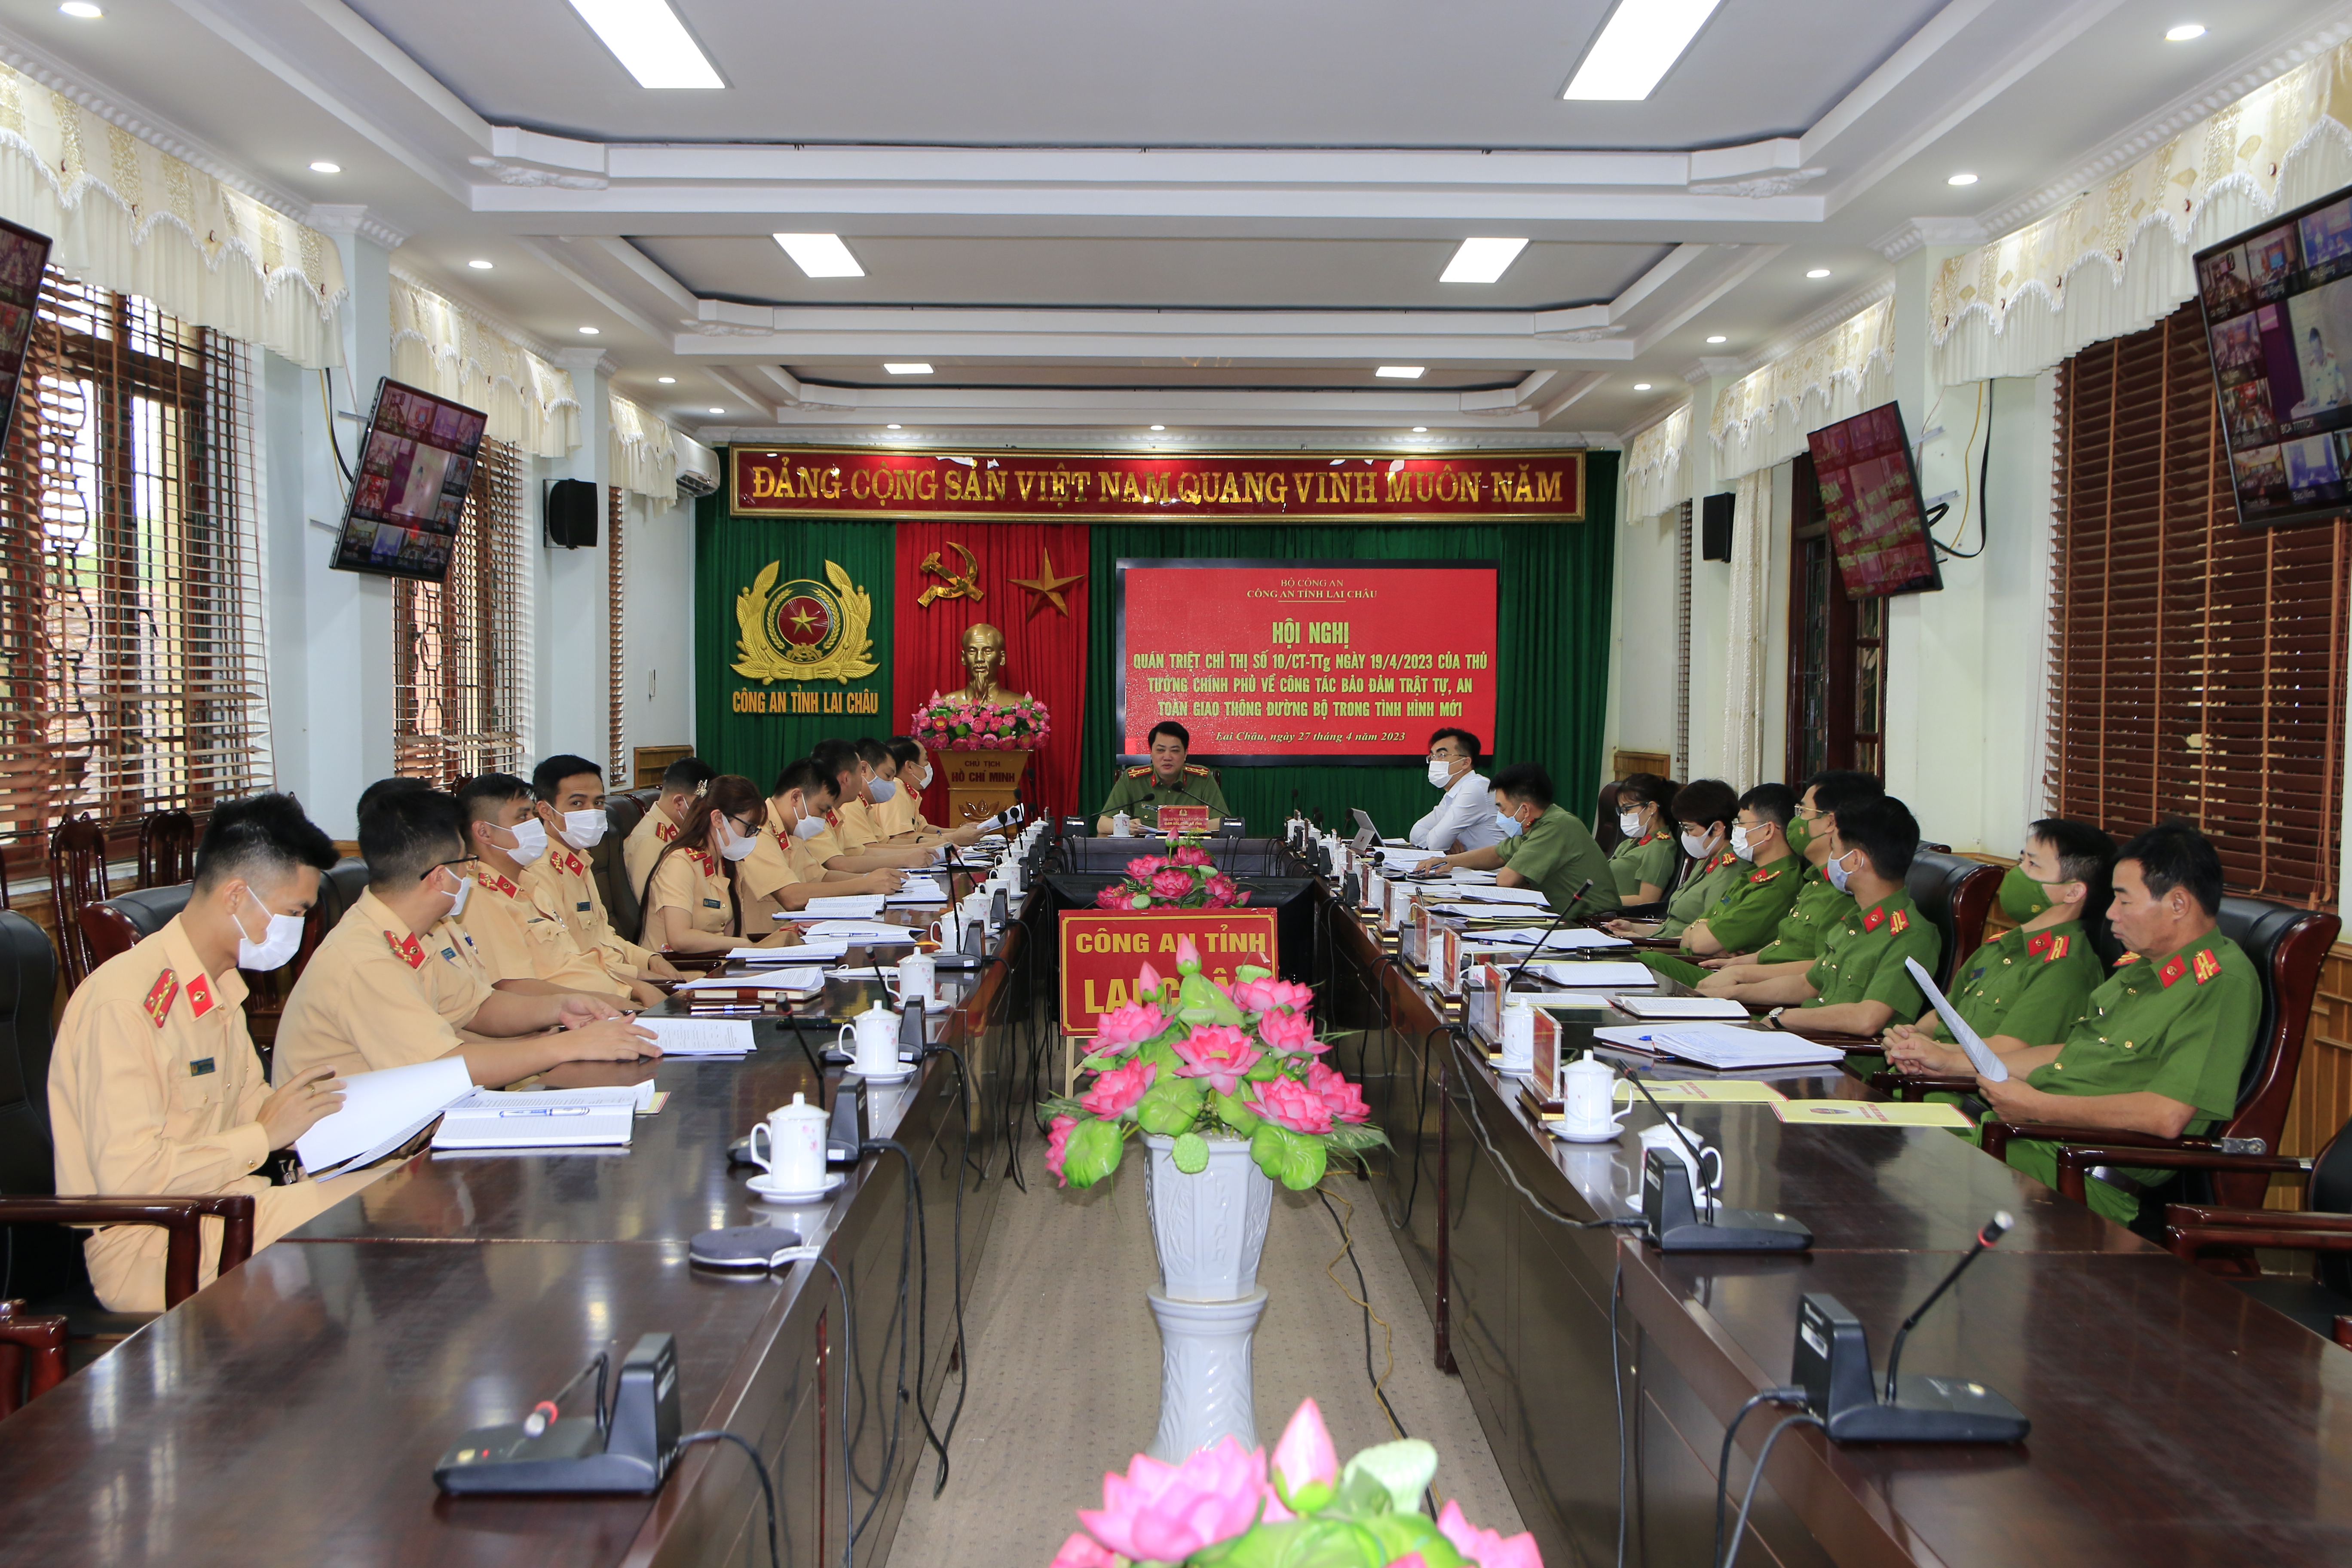 Đại tá Nguyễn Viết Giang - Giám đốc Công an tỉnh dự hội nghị tại điểm cầu Công an tỉnh